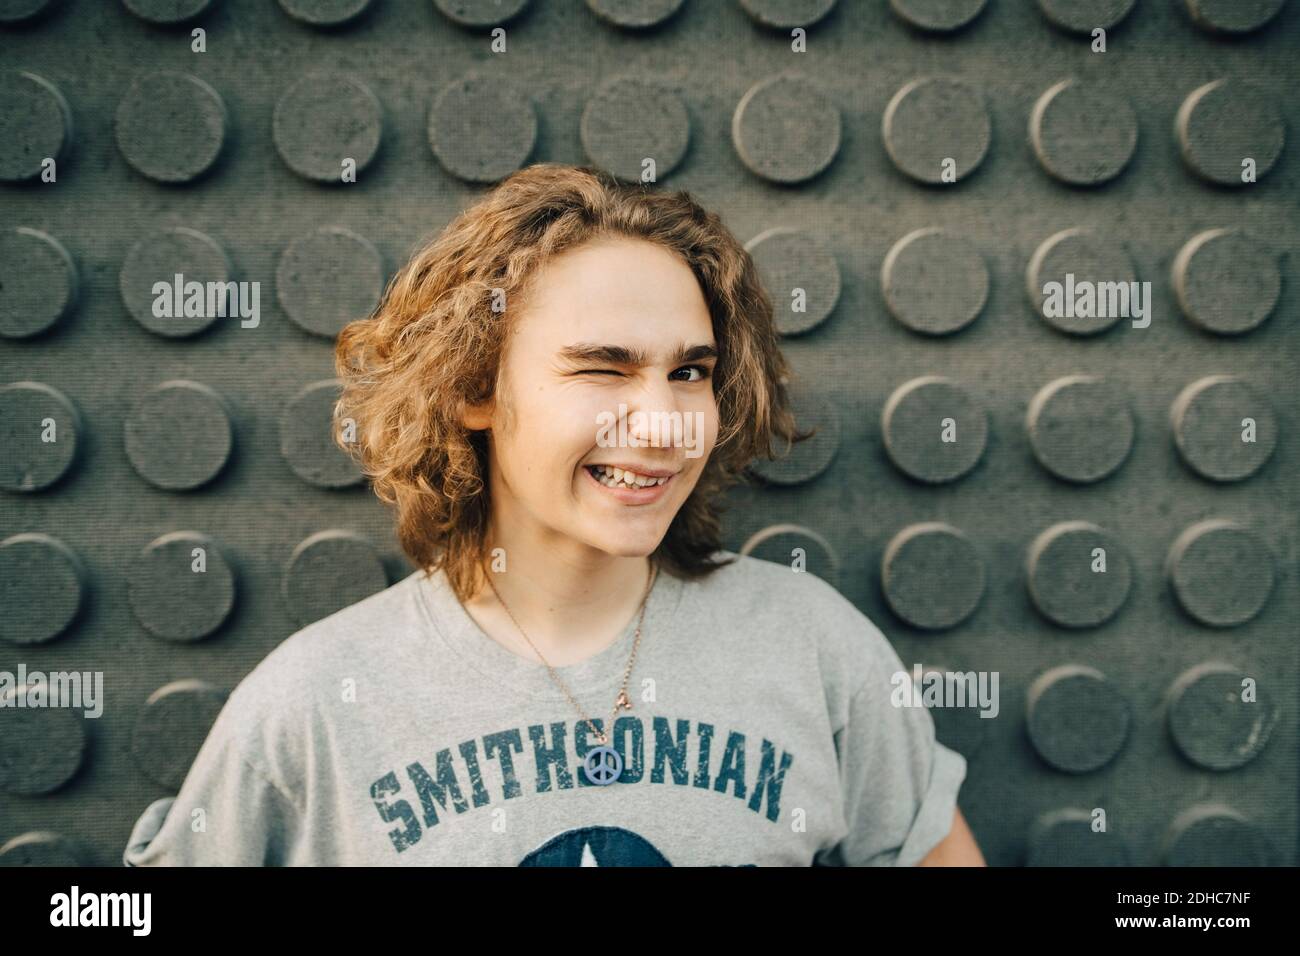 Porträt eines lächelnden jungen Mannes, der gegen die Wand zwinkert Stockfoto